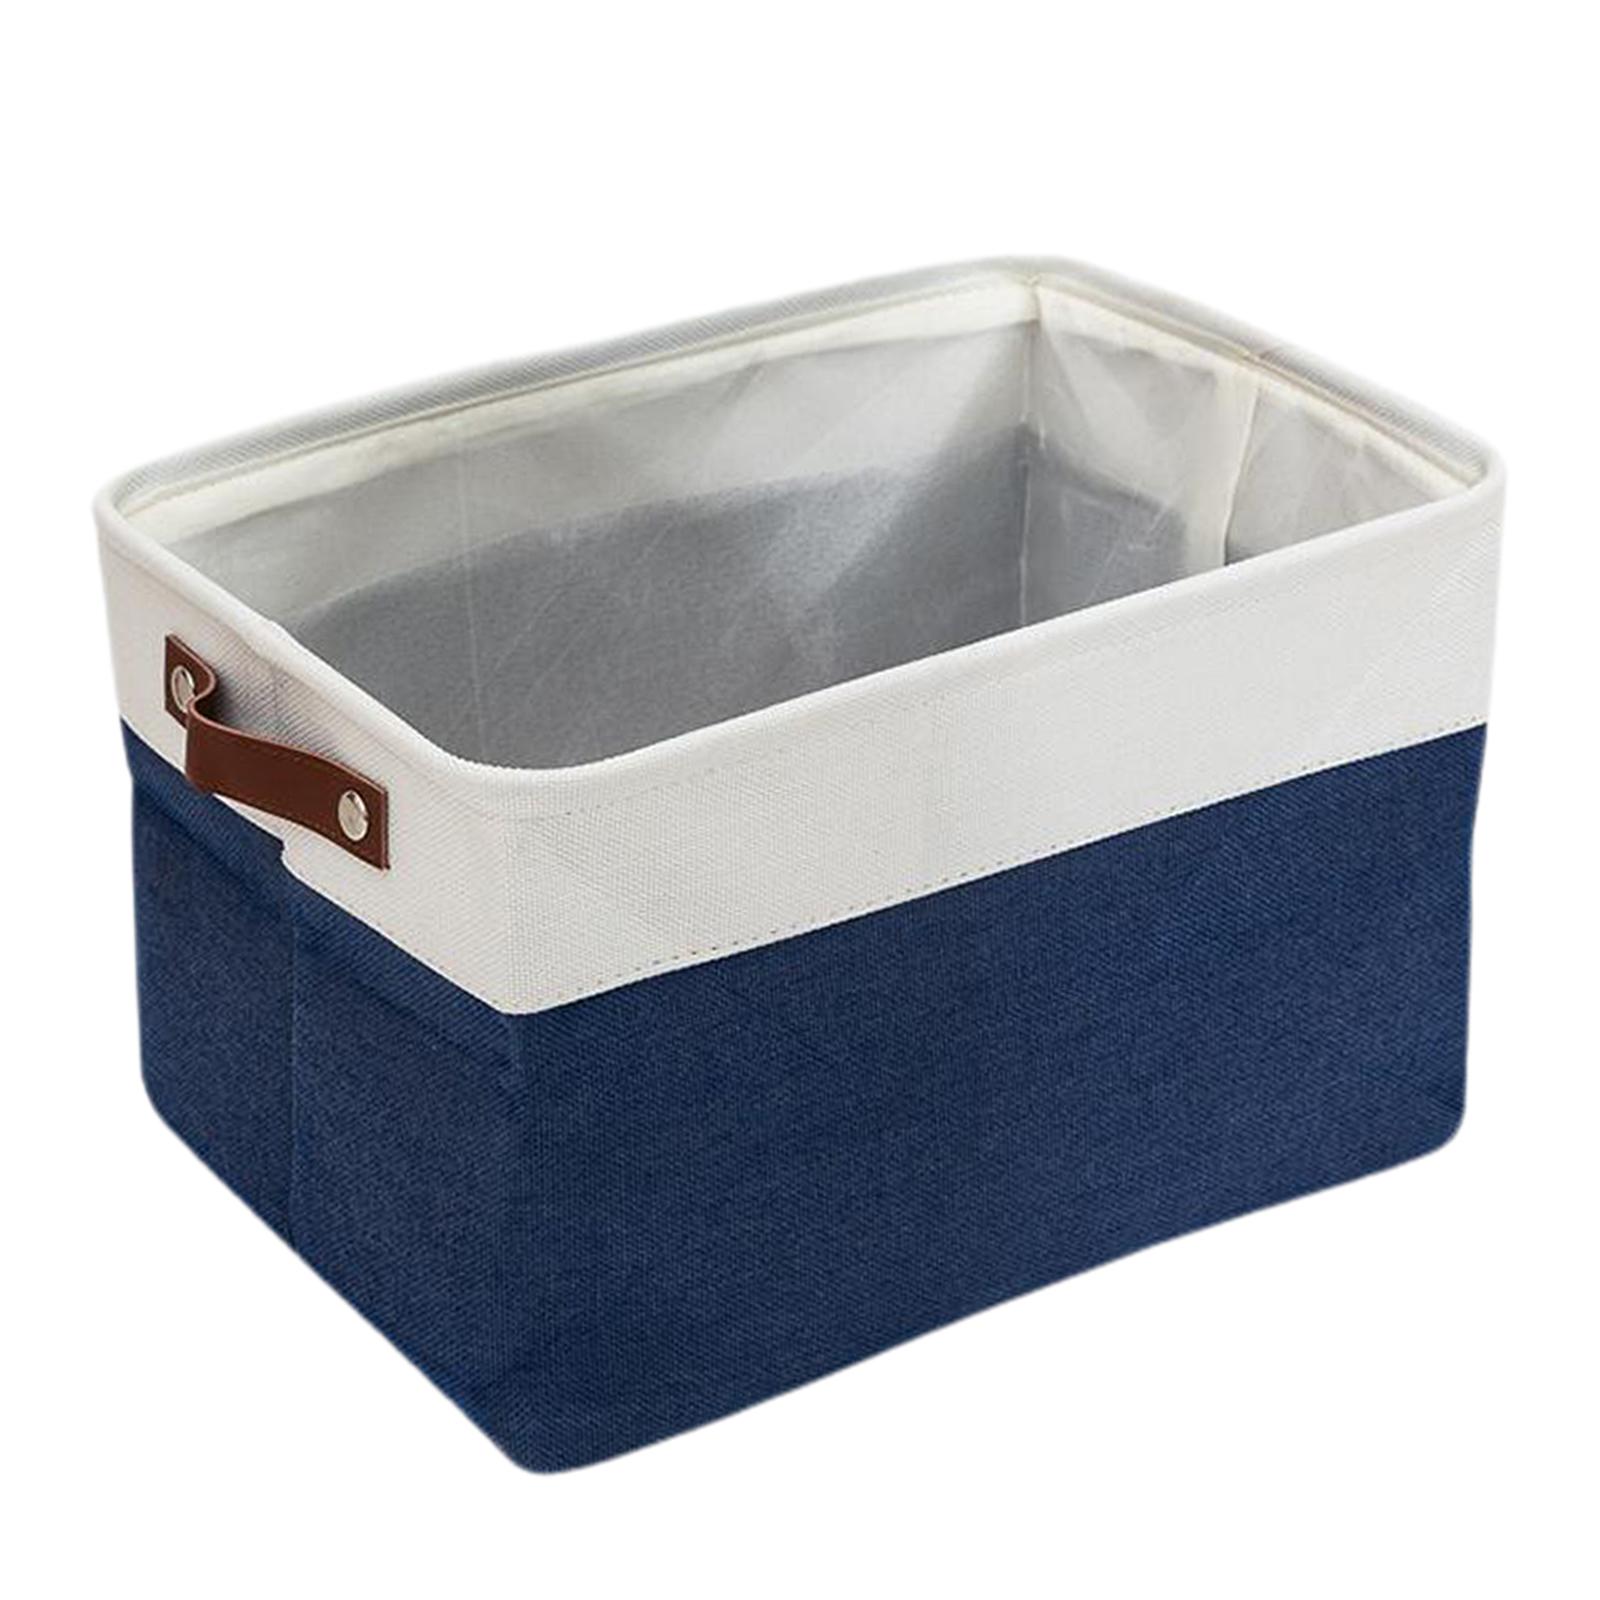 Collapsible Storage Bin Basket Storage Cube Bin With Handle Organizer Blue